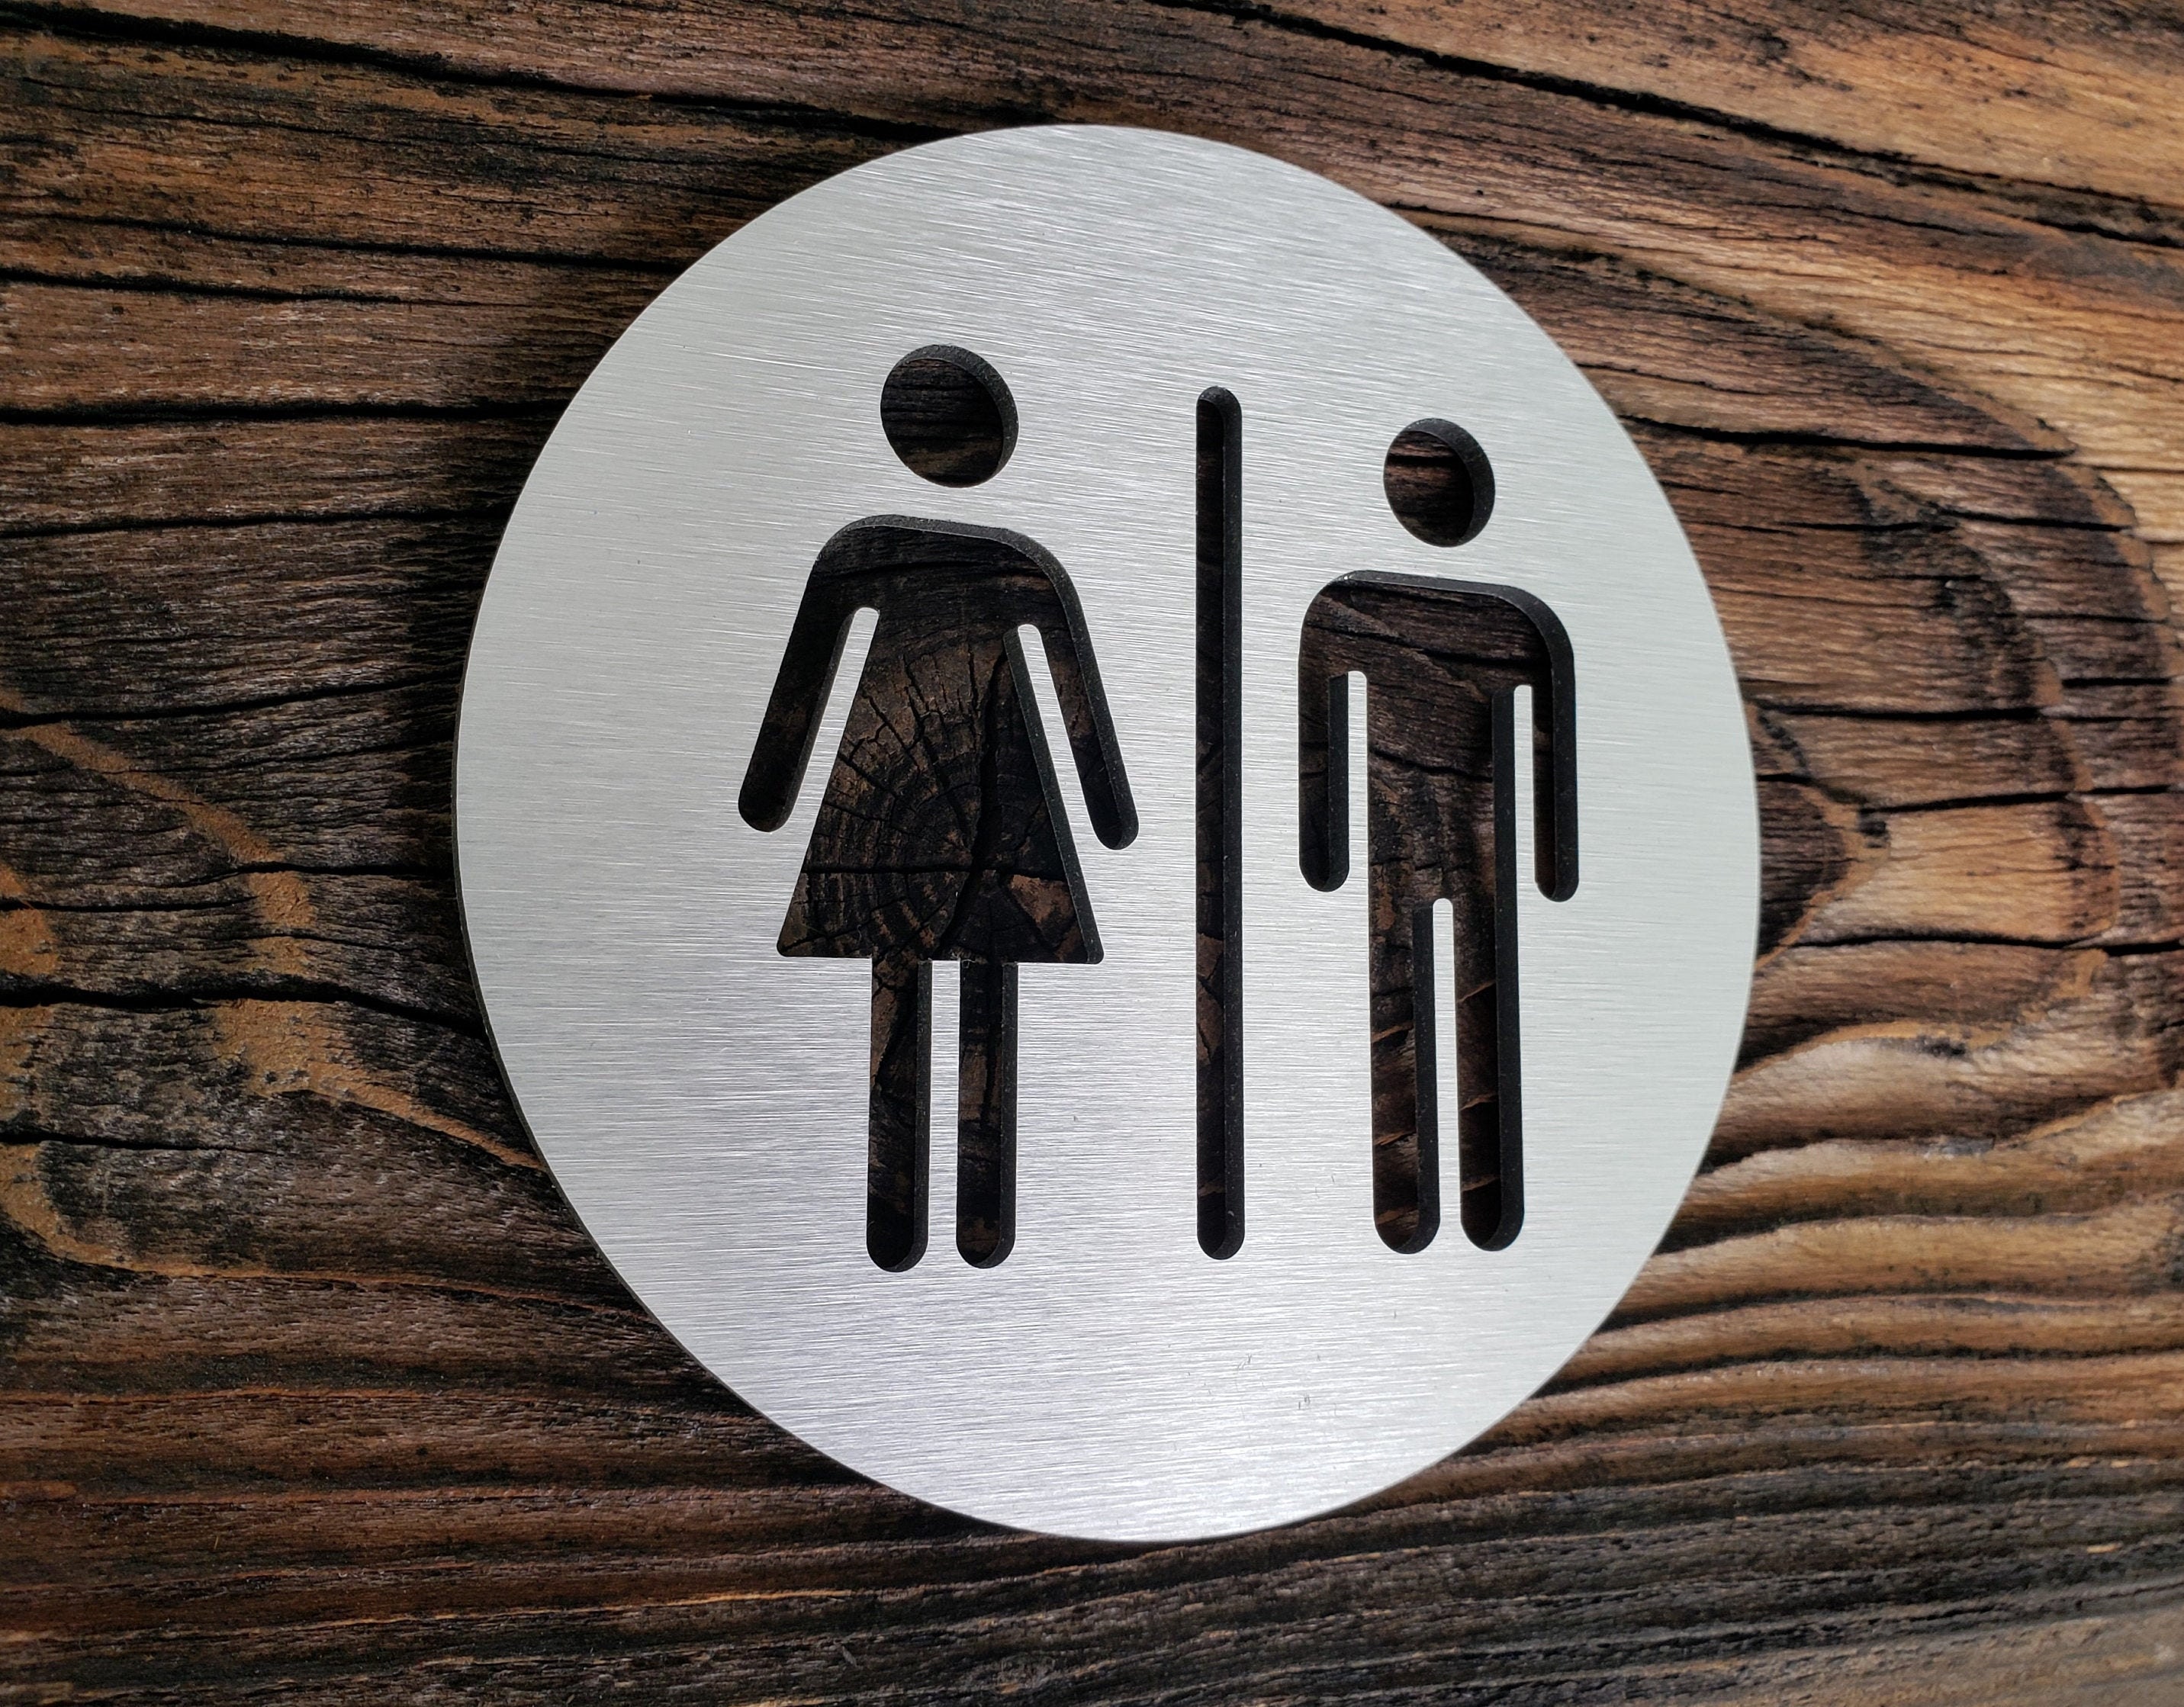 Unisex Restroom Sign All Gender Bathroom Sign Wood Metal Door Sign | My ...